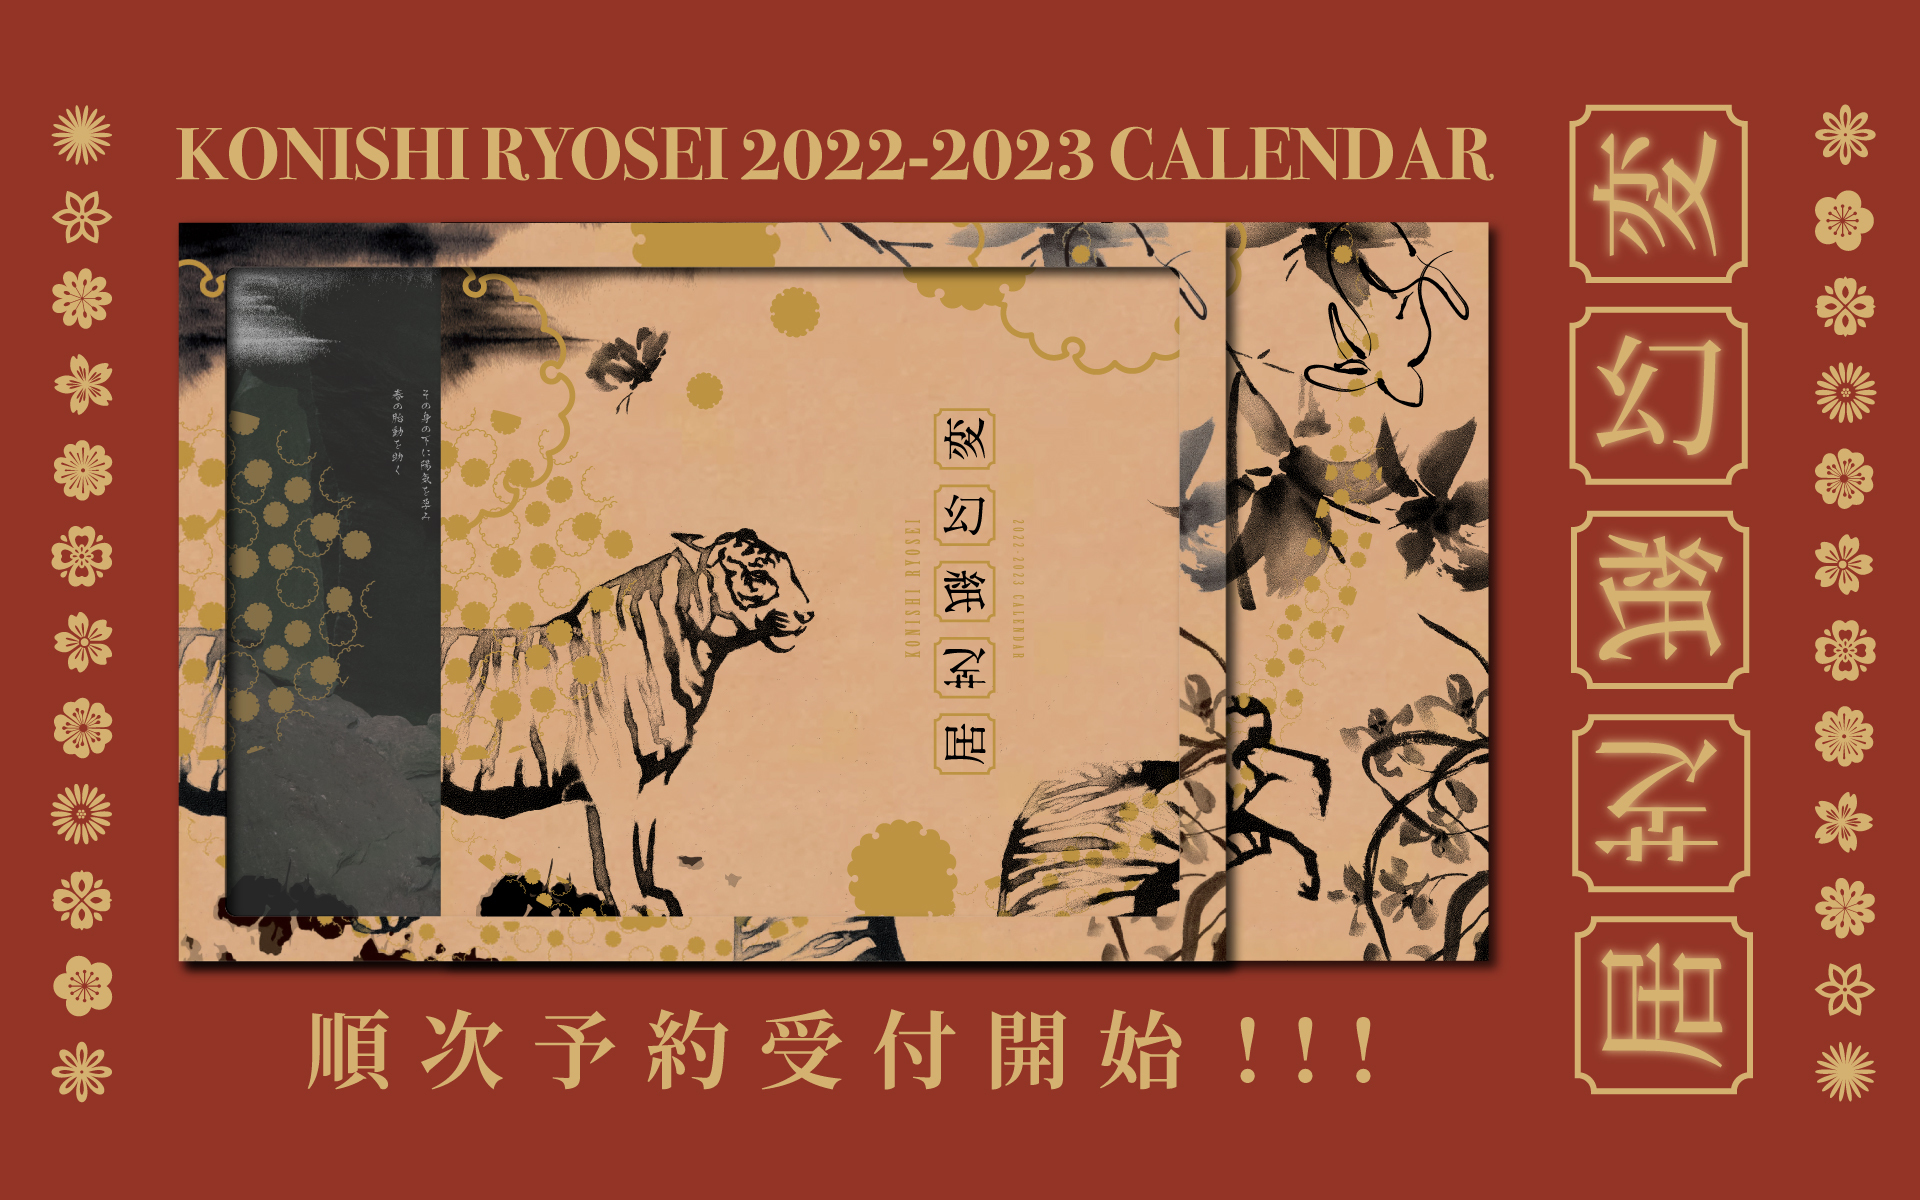 calendar | 小西遼生 OFFICIAL WEBSITE